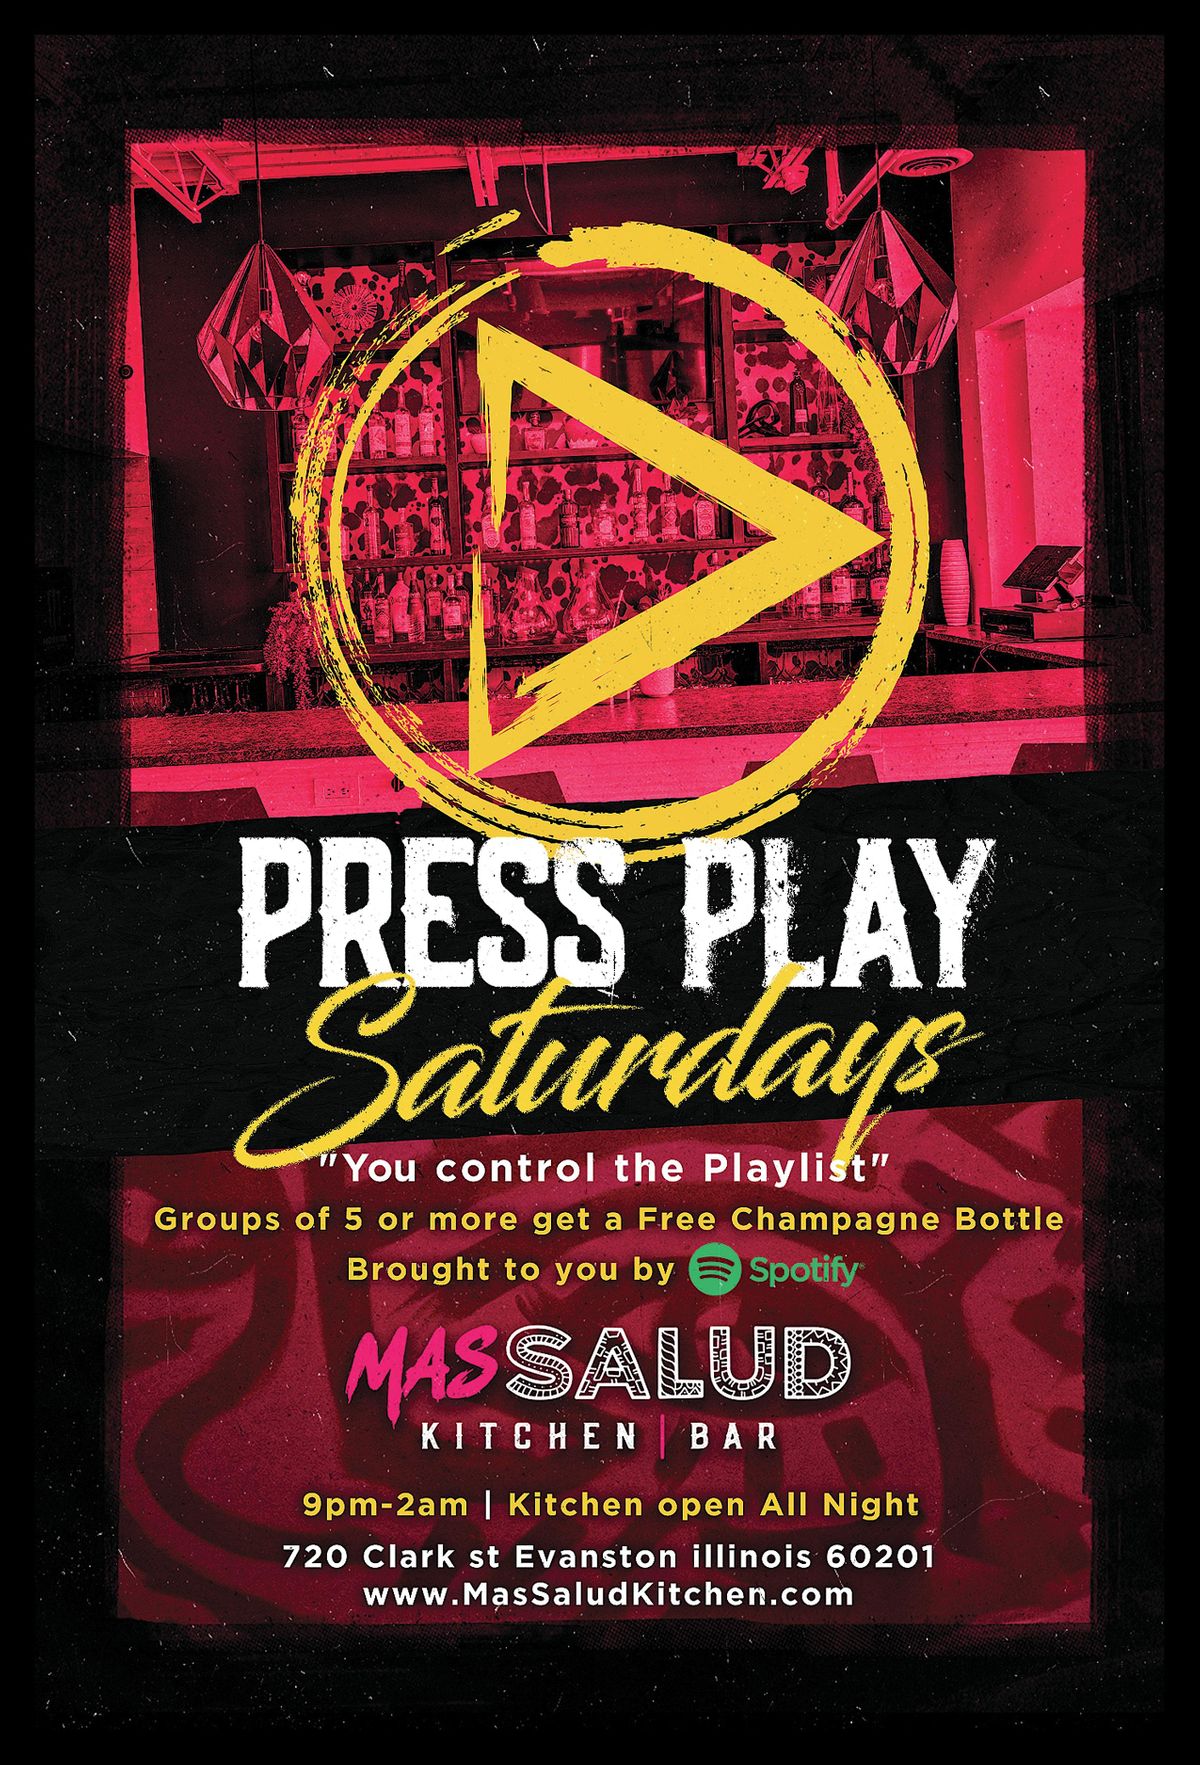 Press Play Saturdays!!!!